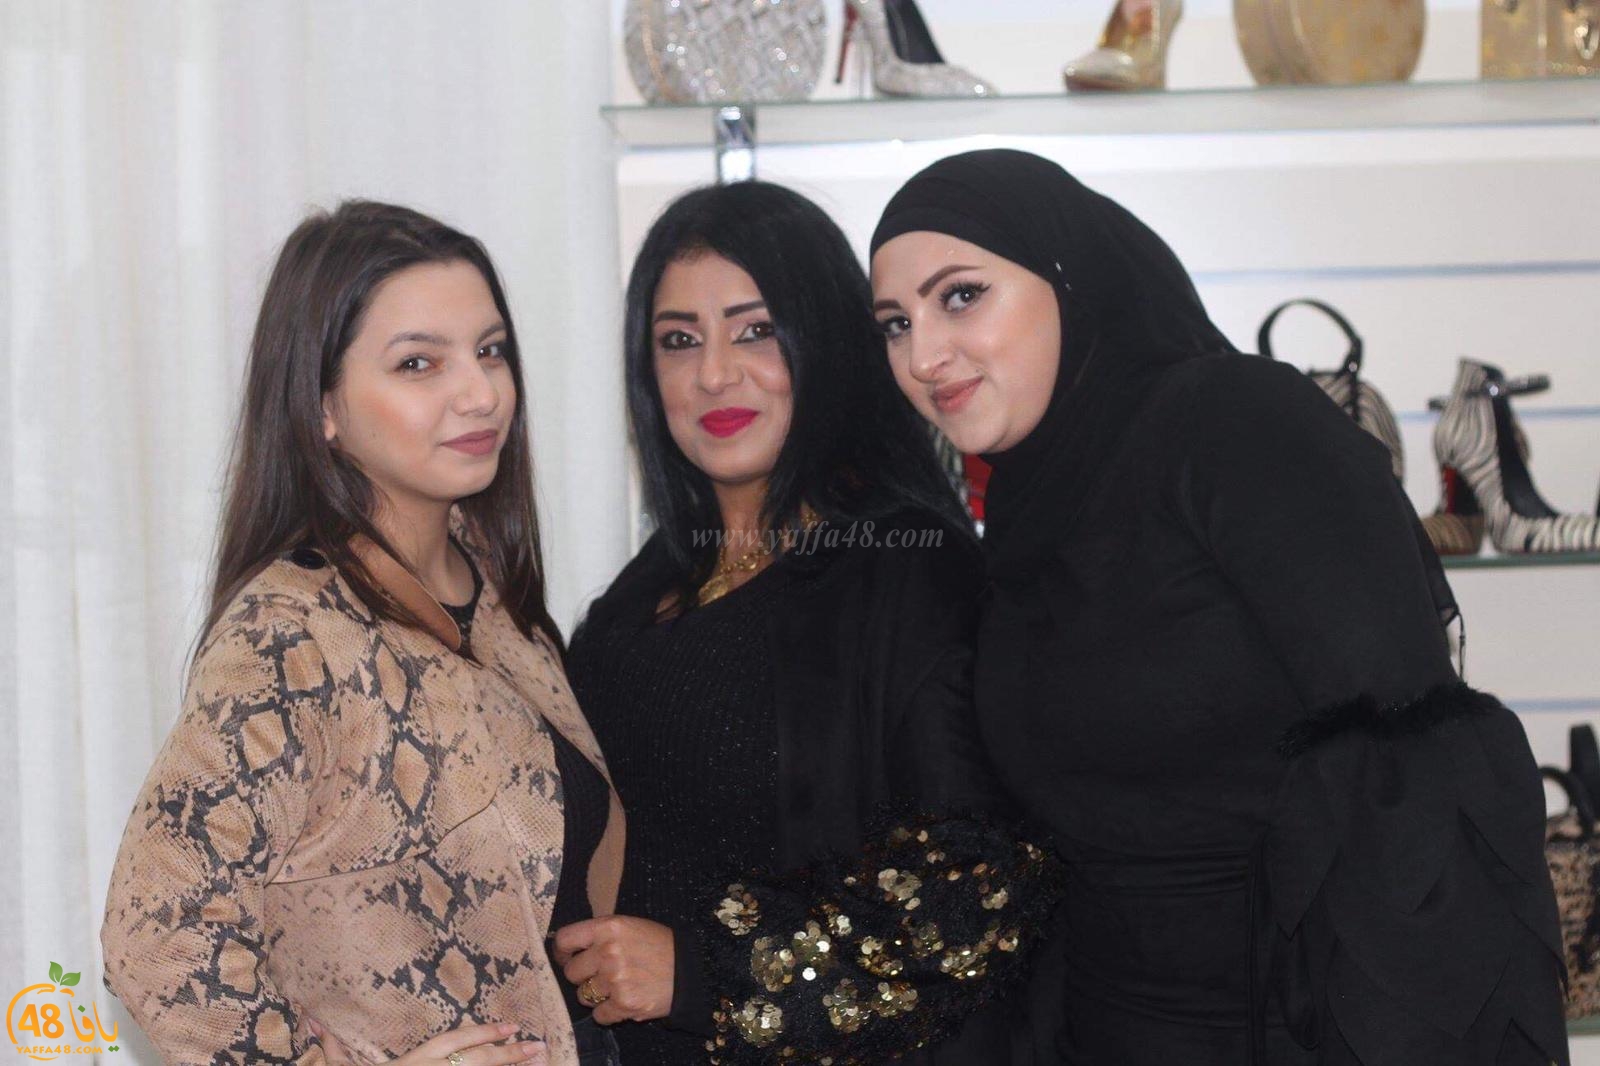 بالصور: افتتاح محل Nani jaffa للملابس النسائية في يافا 